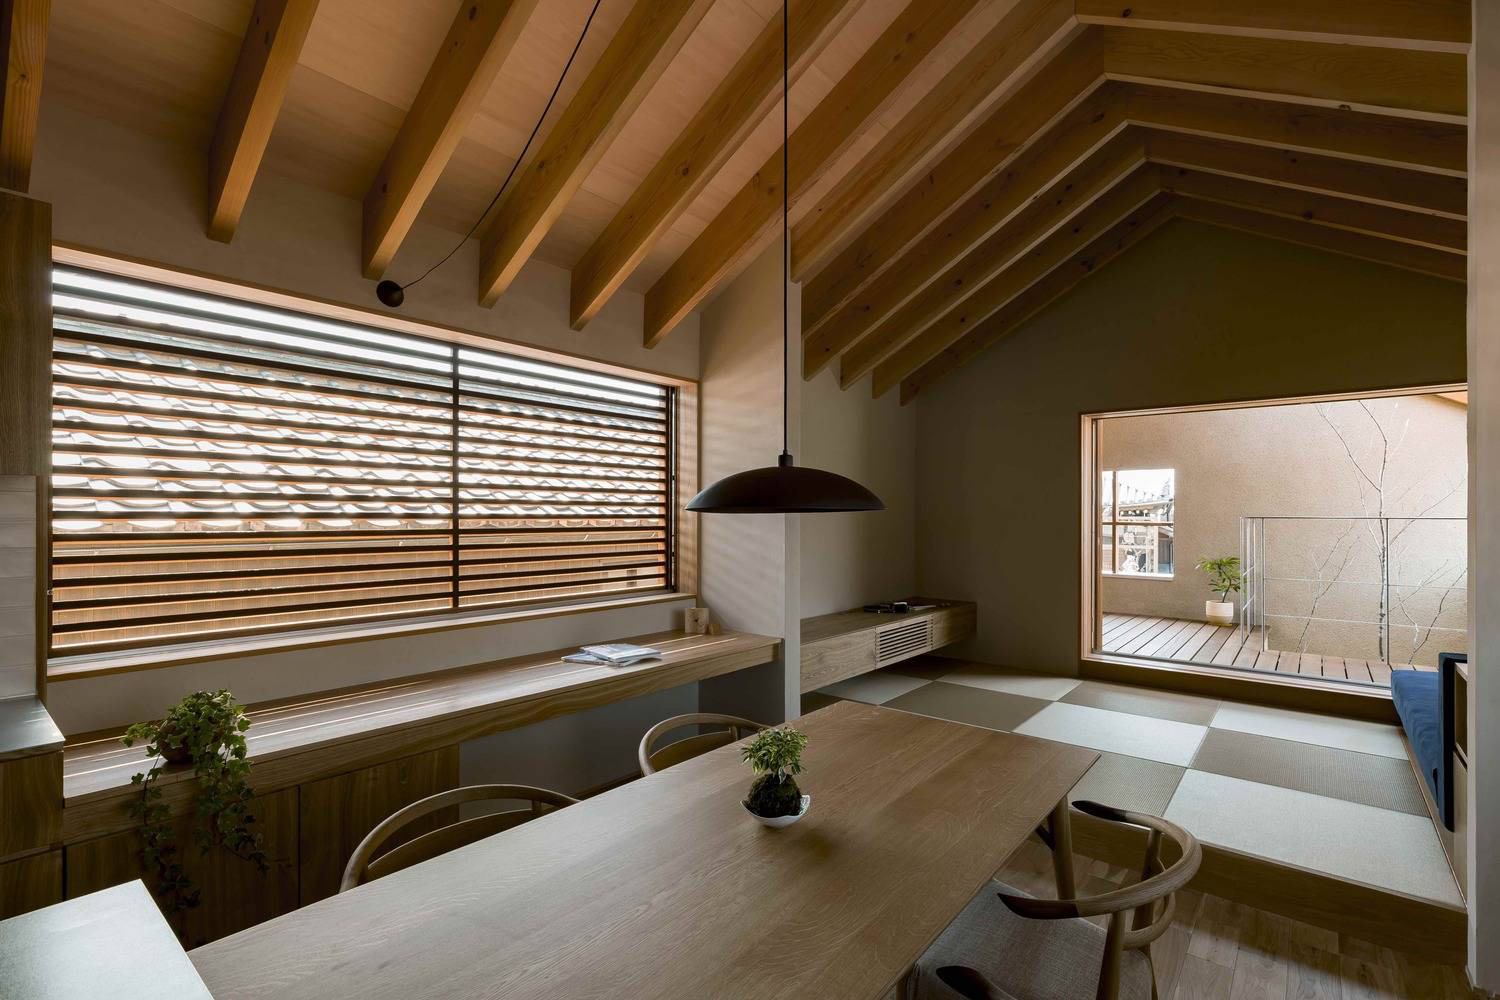 Hình ảnh phòng phòng ăn thoáng sáng với trần ốp gỗ, bàn ghế gỗ, đèn thả trang trí, ghế ngồi bên cửa sổ